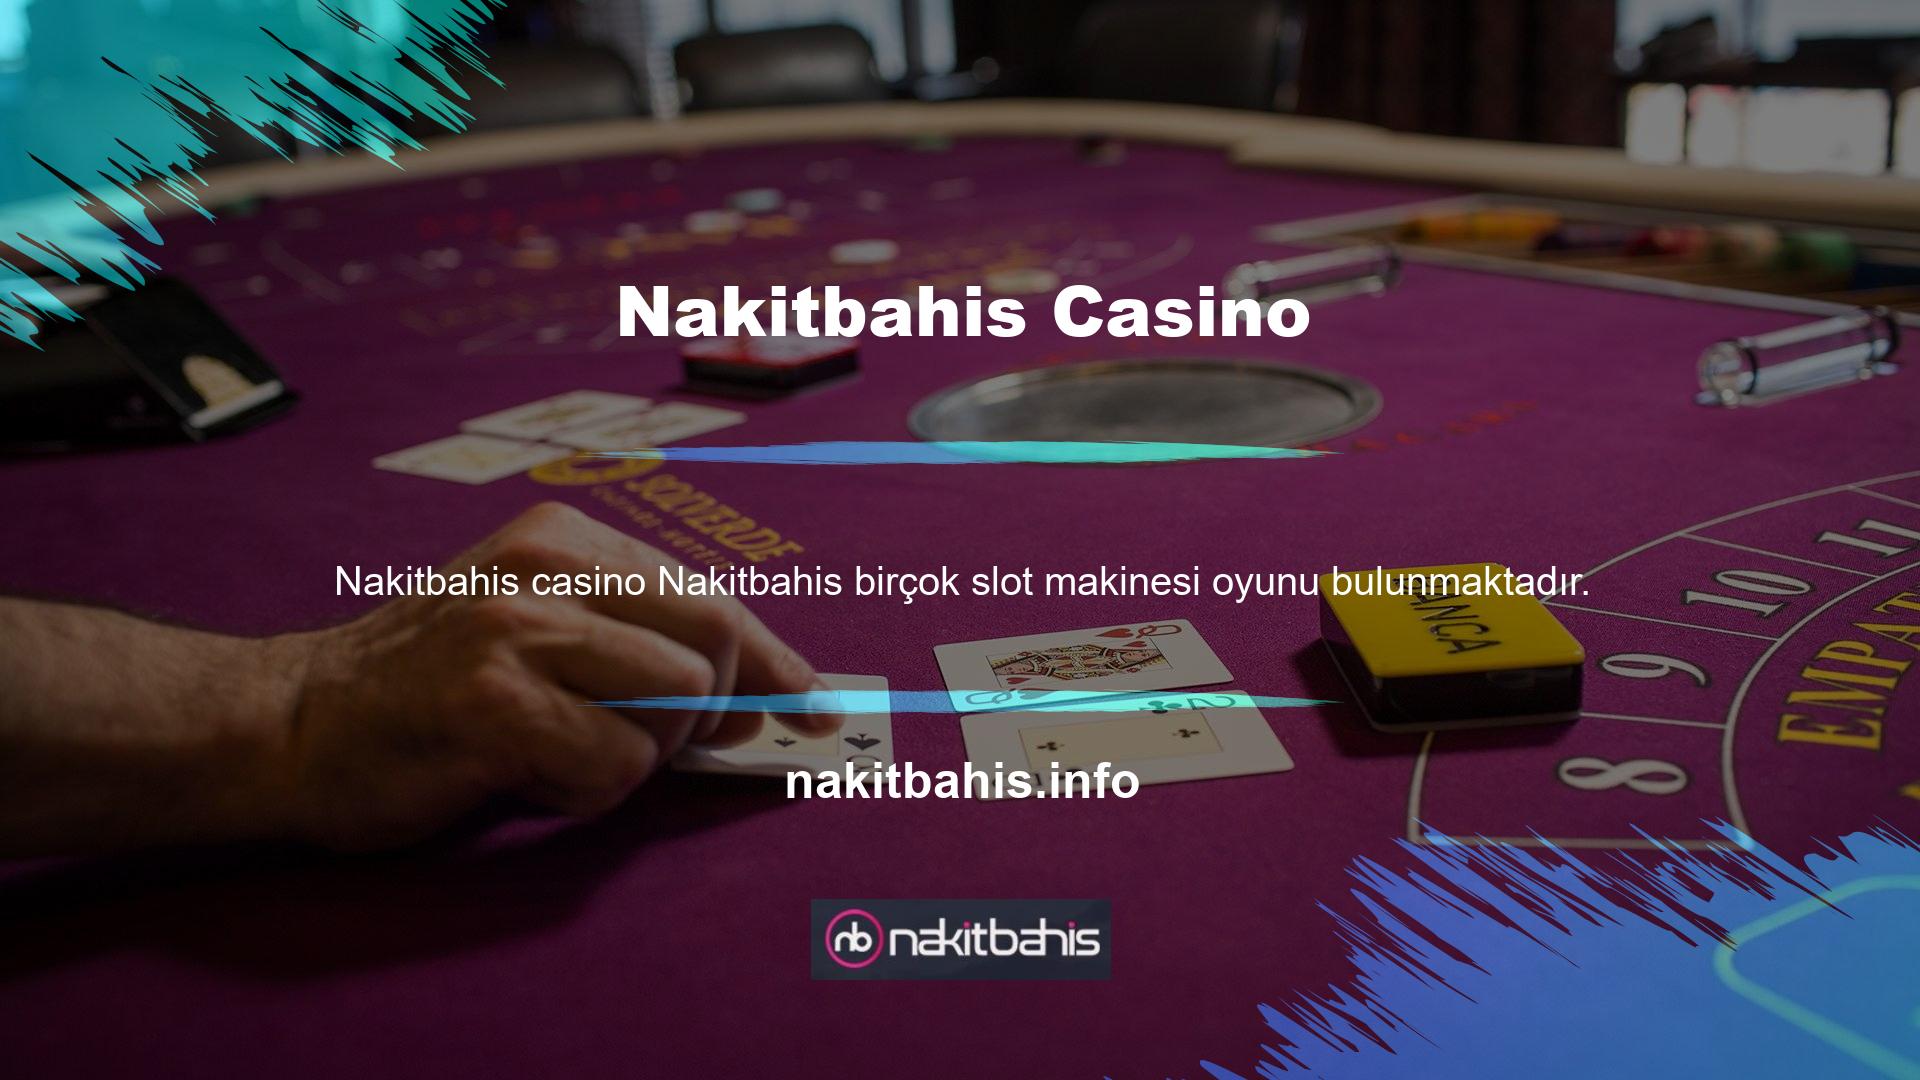 Dünyadaki hemen hemen tüm oyun sağlayıcılar Nakitbahis ile casino oyunları üretmektedir